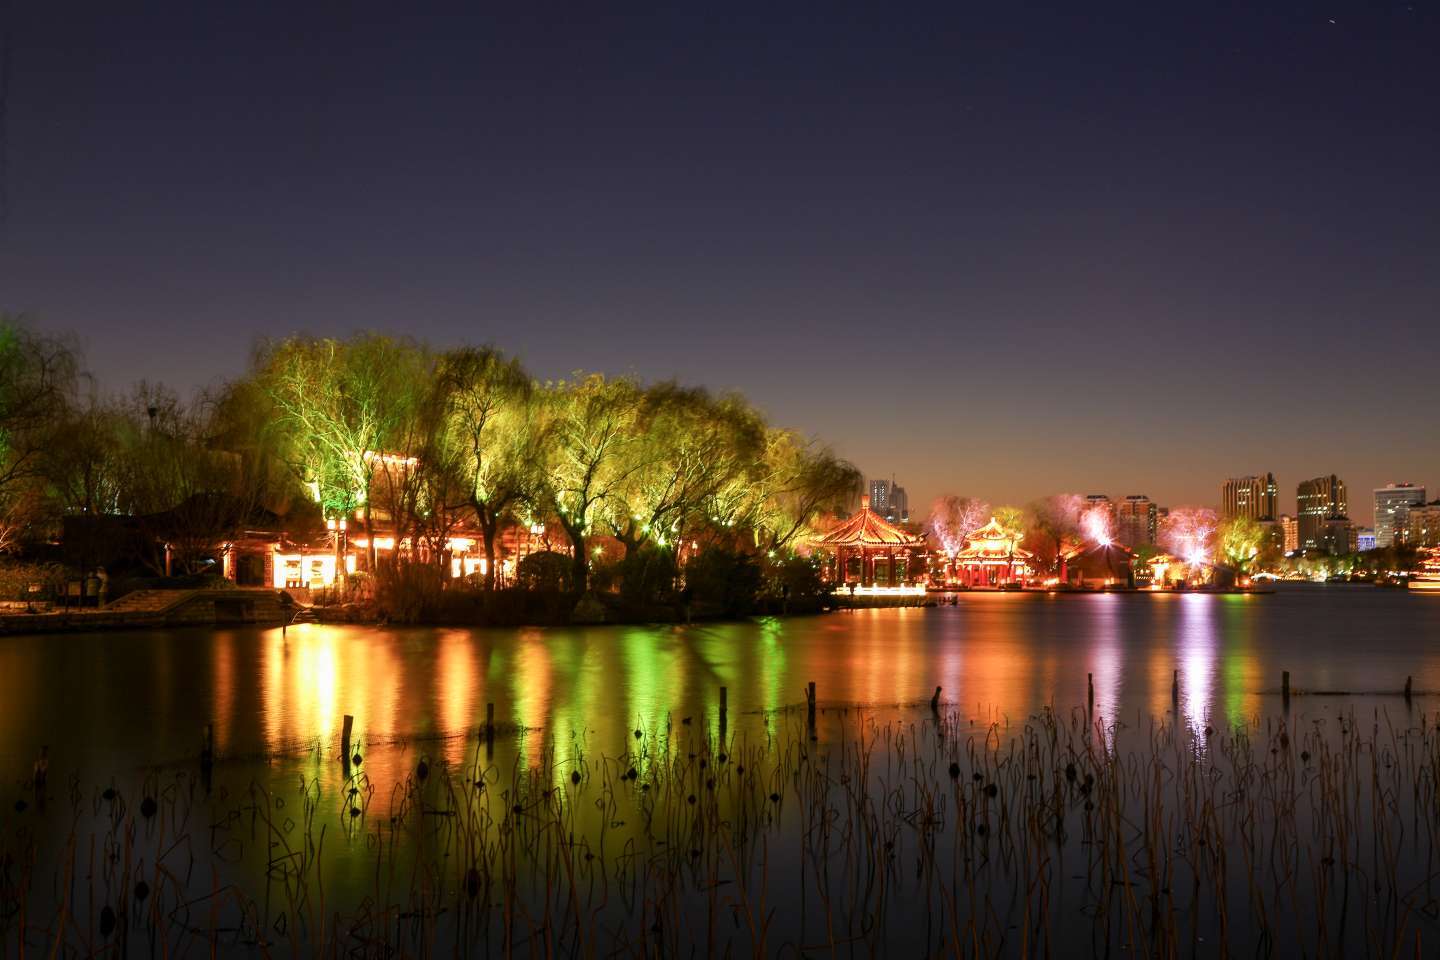 济南大明湖夜景,流光溢彩美轮美奂